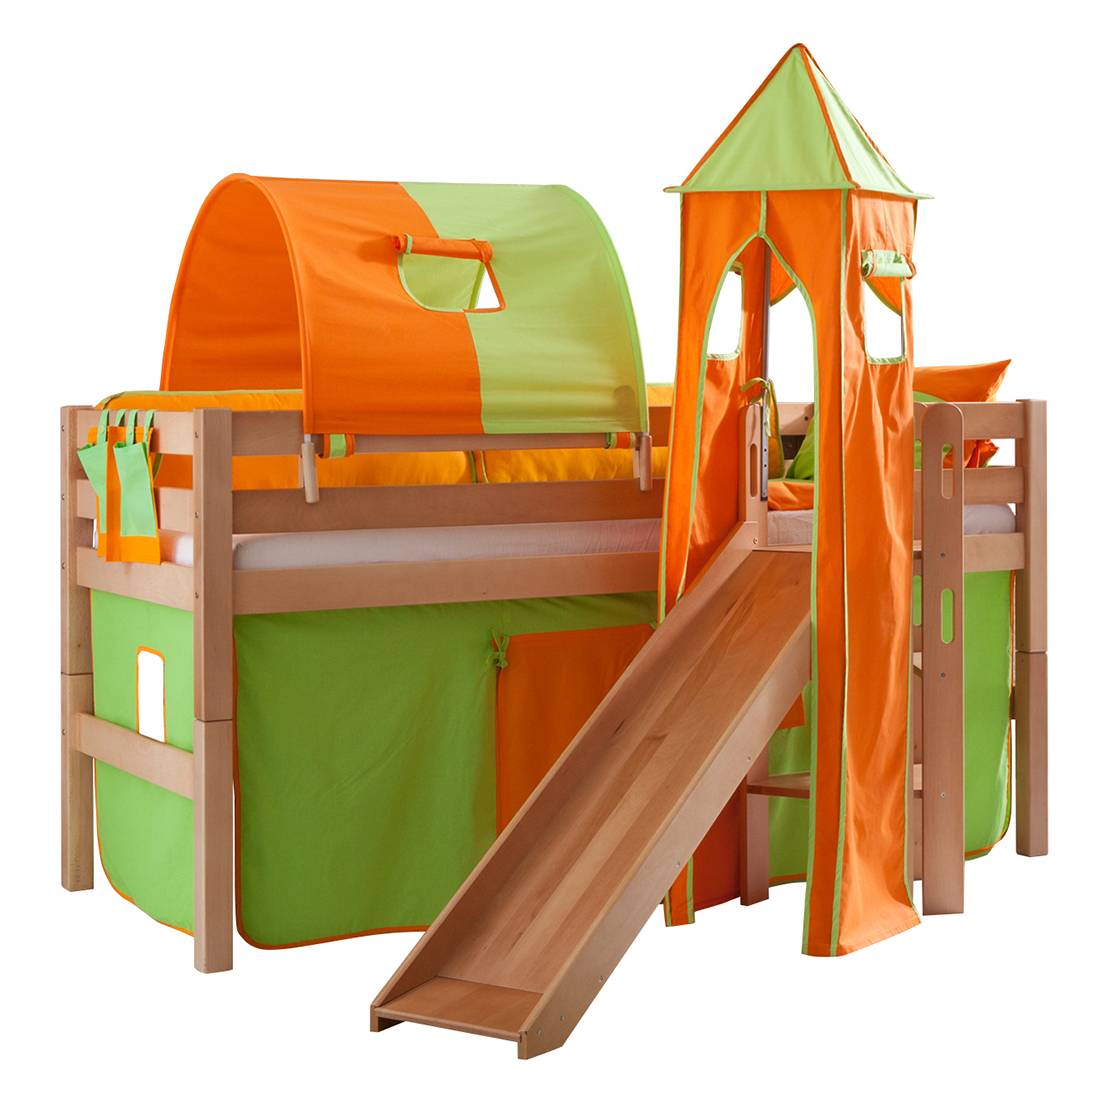 Spielbett Eliyas - mit Rutsche, Vorhang, Tunnel, Turm und Tasche - Buche natur/Textil grün-orange, Relita